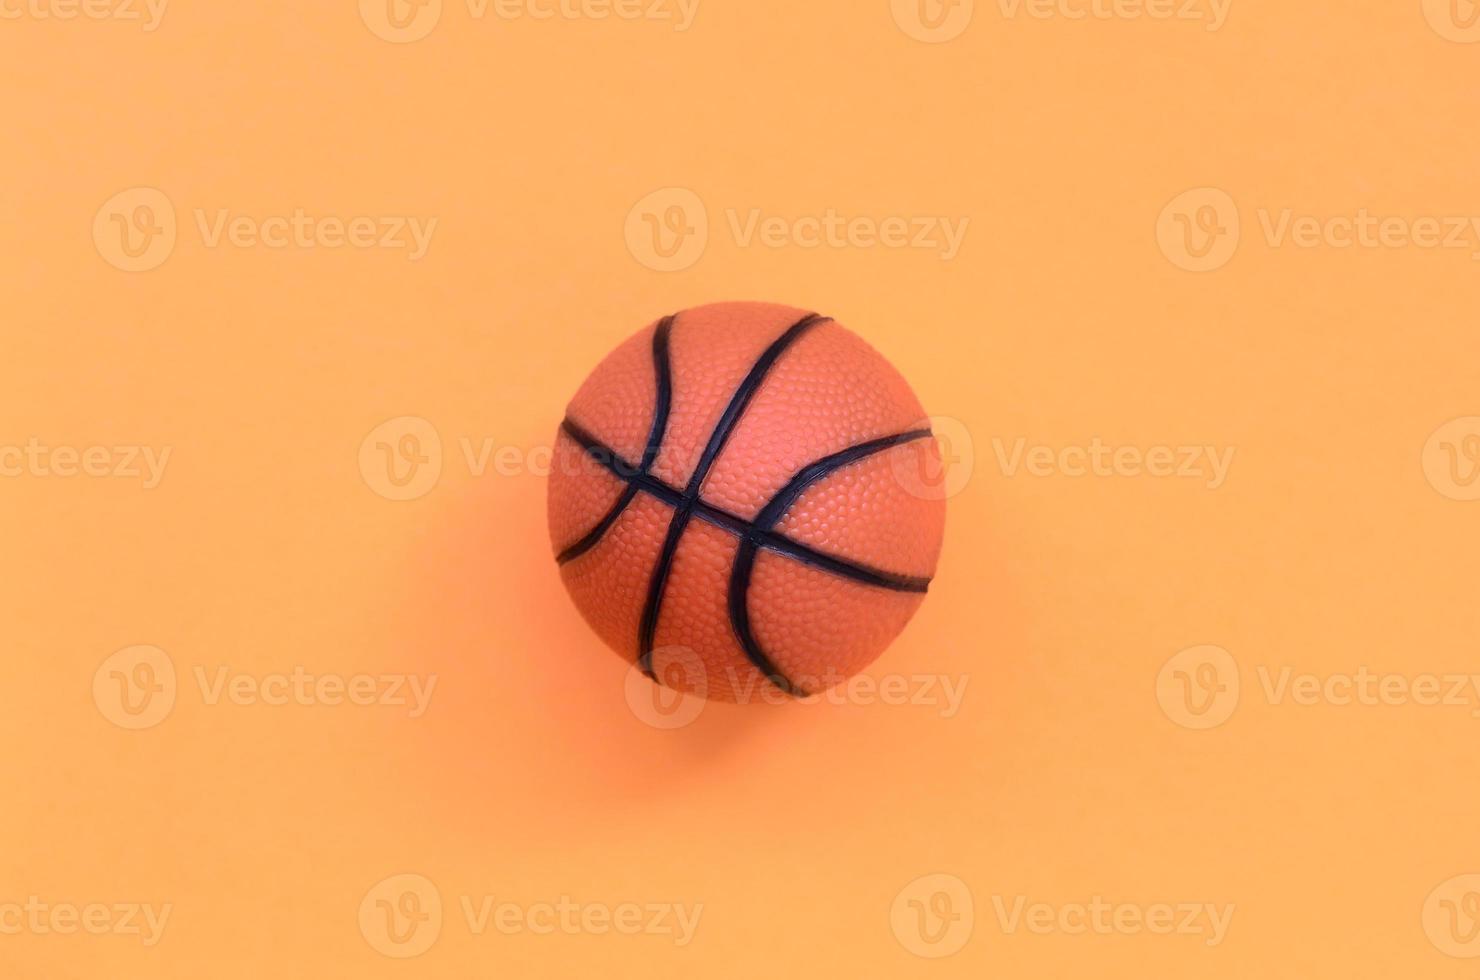 petite balle orange pour le jeu de sport de basket-ball se trouve sur fond de texture de papier de couleur orange pastel mode dans un concept minimal photo